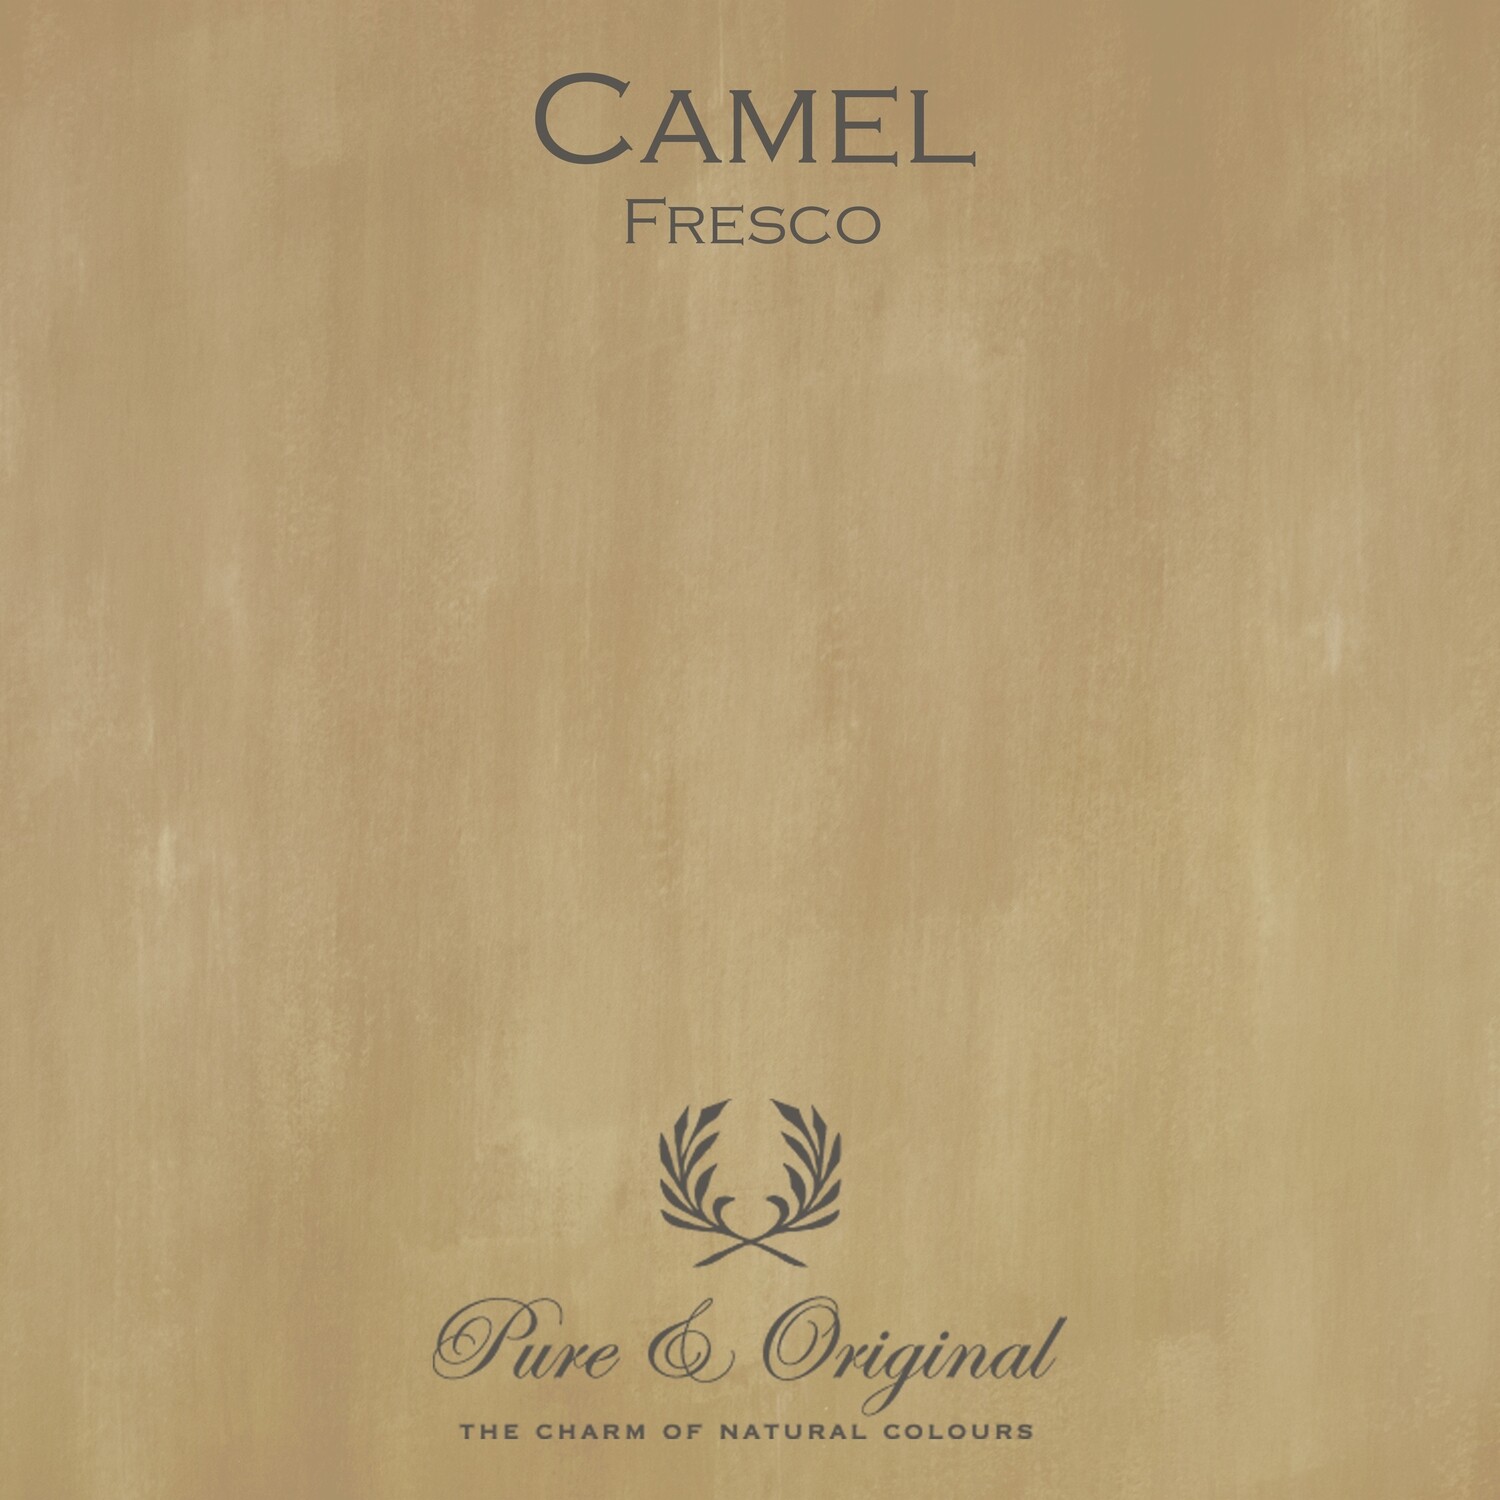 Camel Fresco